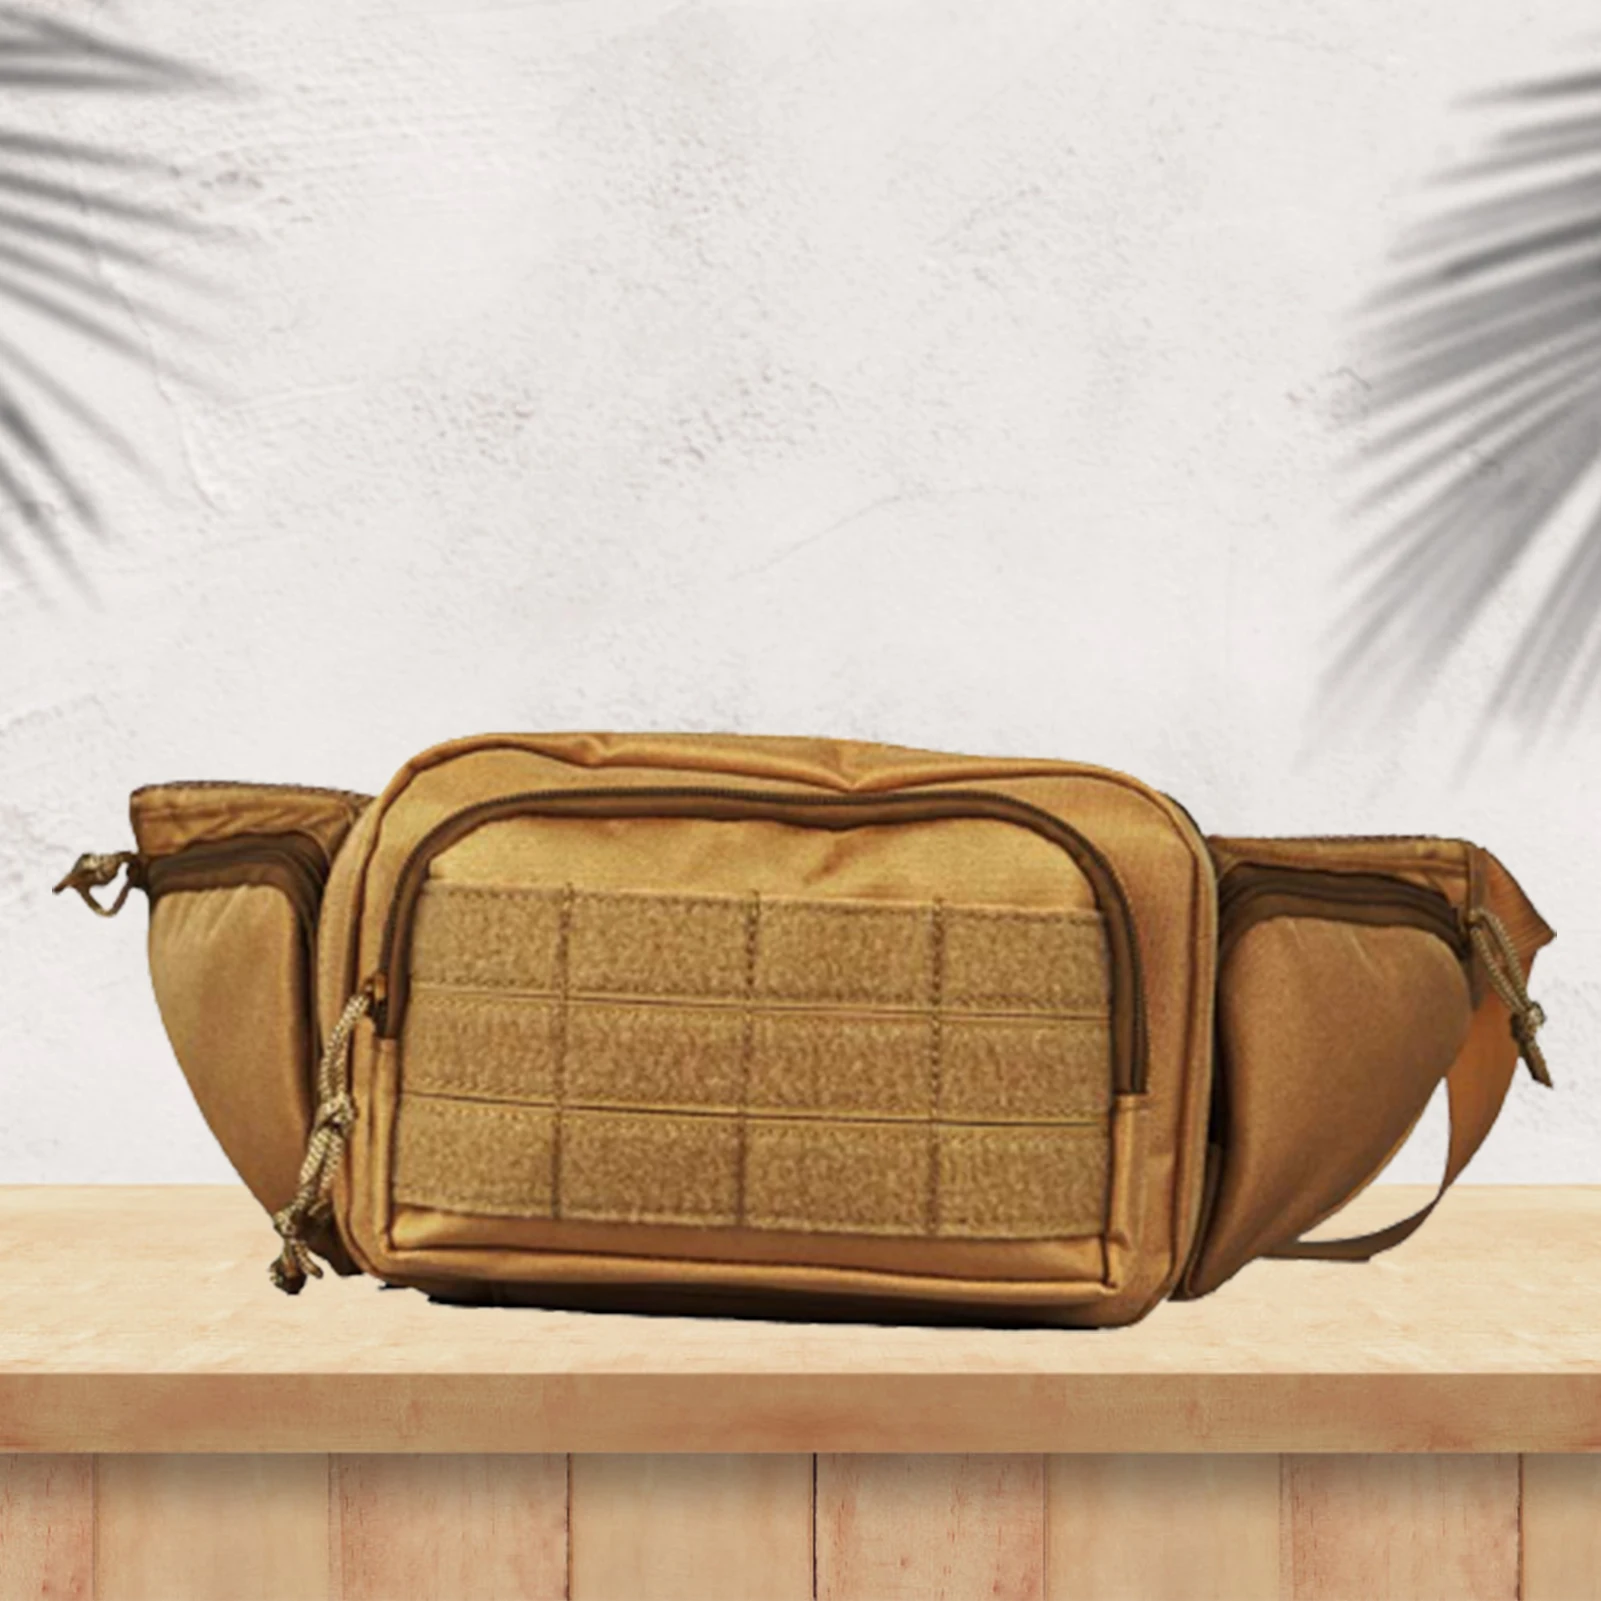 Мужская Женская поясная сумка с 4 карманами на молнии, водонепроницаемая поясная сумка для путешествий, занятий спортом, бега, пеших прогулок